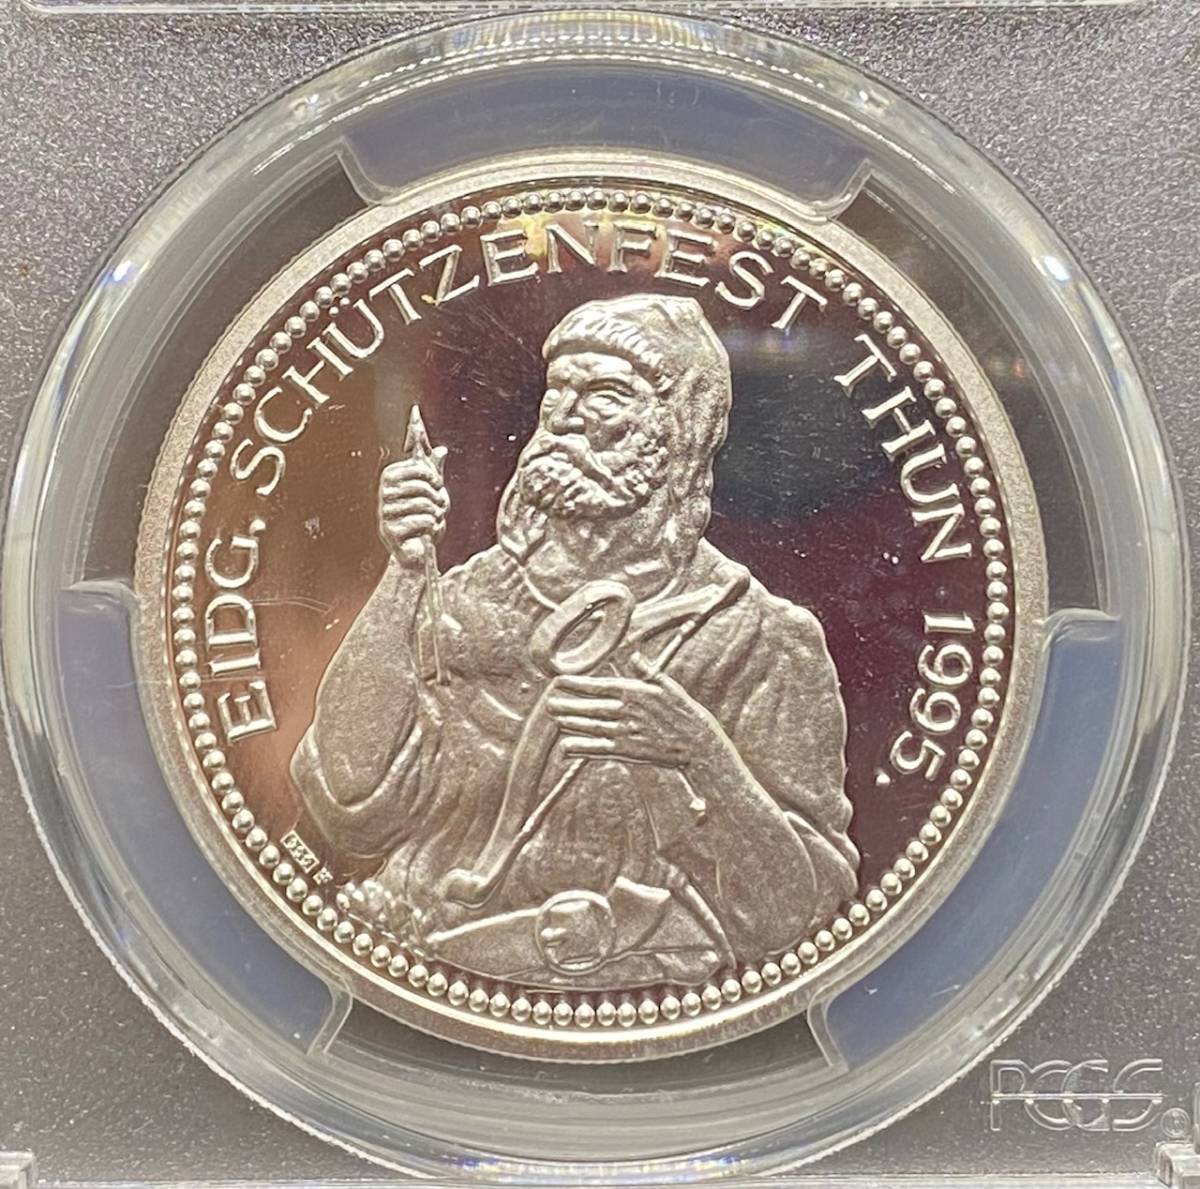 【スイスを代表する美しい硬貨】1995年スイス連邦射撃祭トゥーン50フラン銀貨/PR68DCAM/PCGS鑑定/スイスの絶景と空気がこのコインに凝縮。_精巧なデザインが美しい。